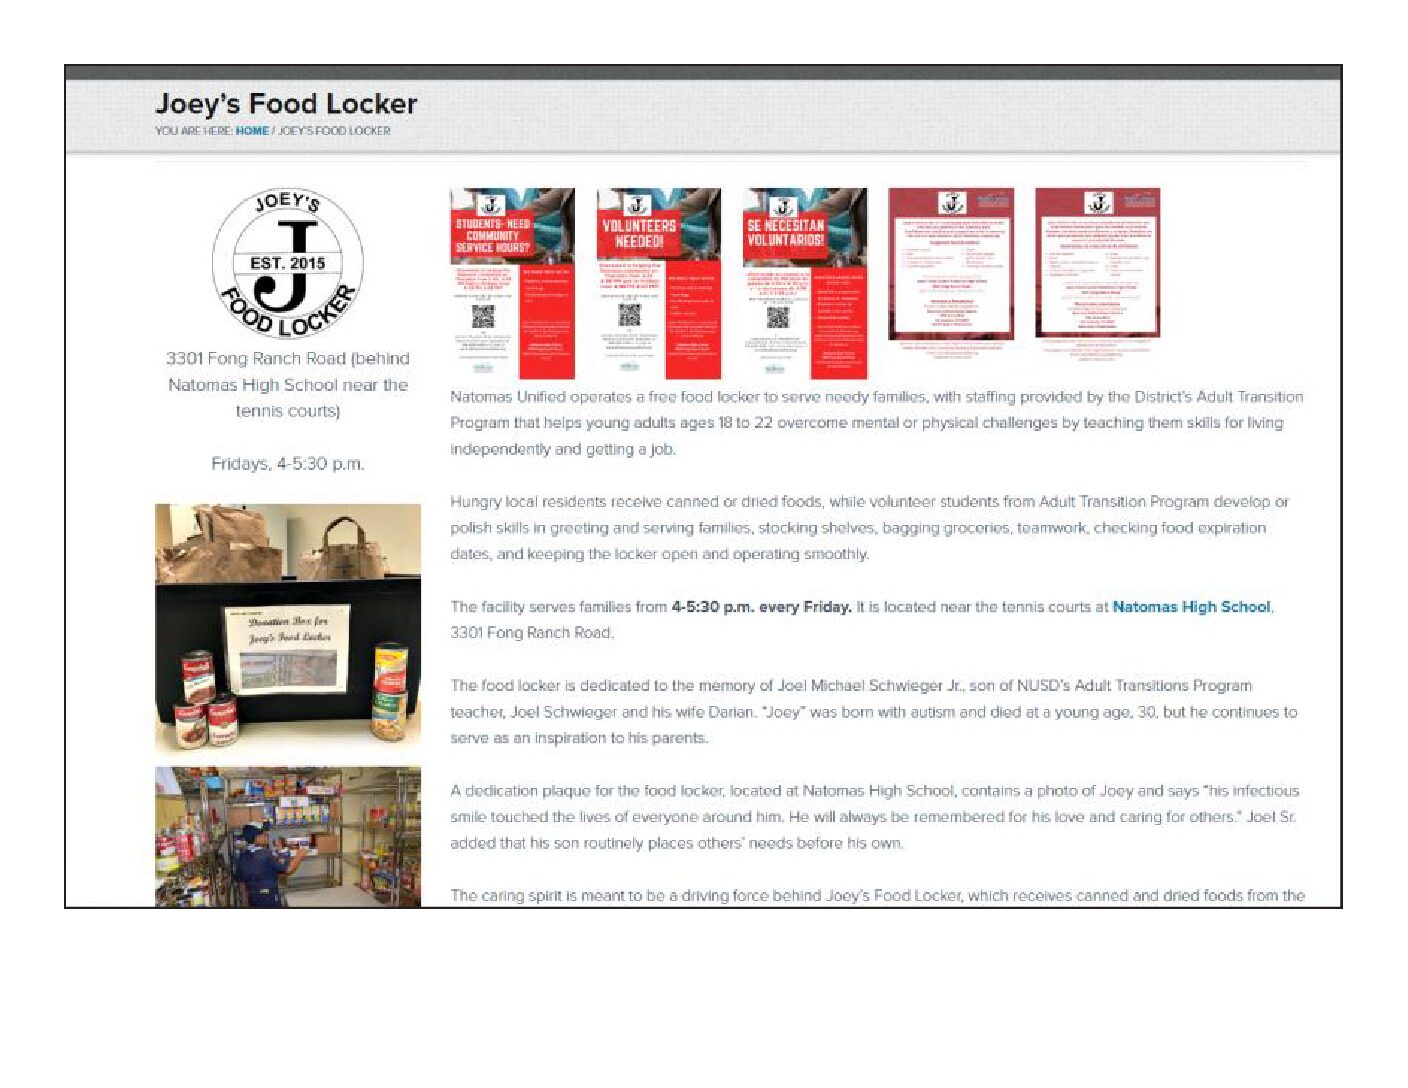 Joey Food Locker website.